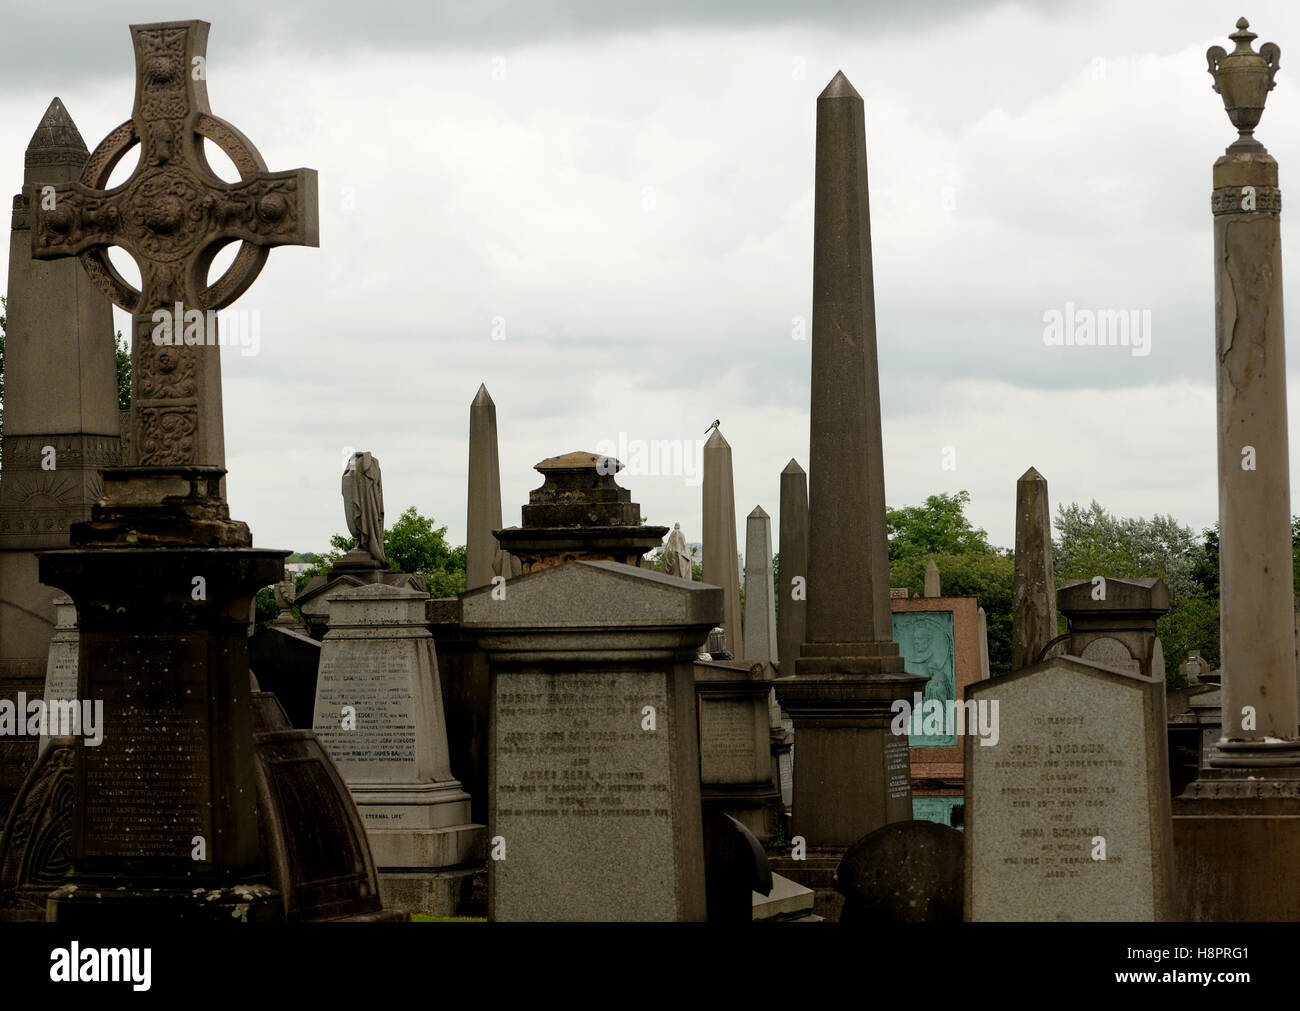 Monuments de la Nécropole de Glasgow. La nécropole est un cimetière près de la cathédrale saint Mungo. Glasgow, Ecosse. UK. Banque D'Images